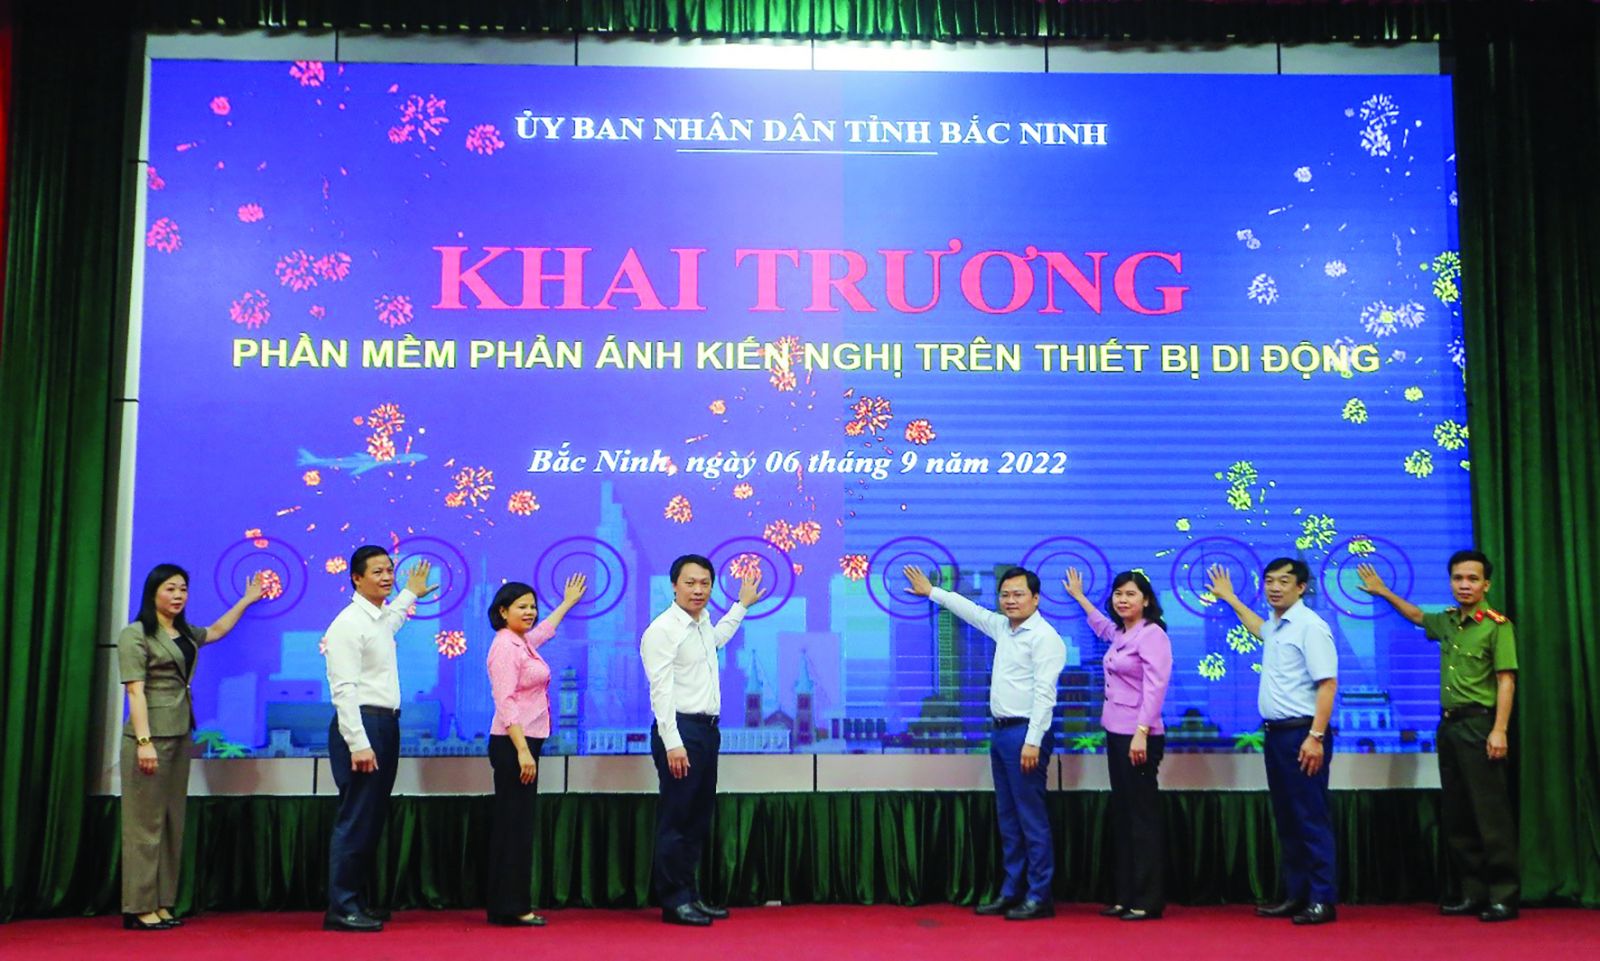  Lãnh đạo Bộ TTTT cùng lãnh đạo tỉnh Bắc Ninh thực hiện nghi thức khai trương phần mềm phản ánh kiến nghị trên thiết bị di động